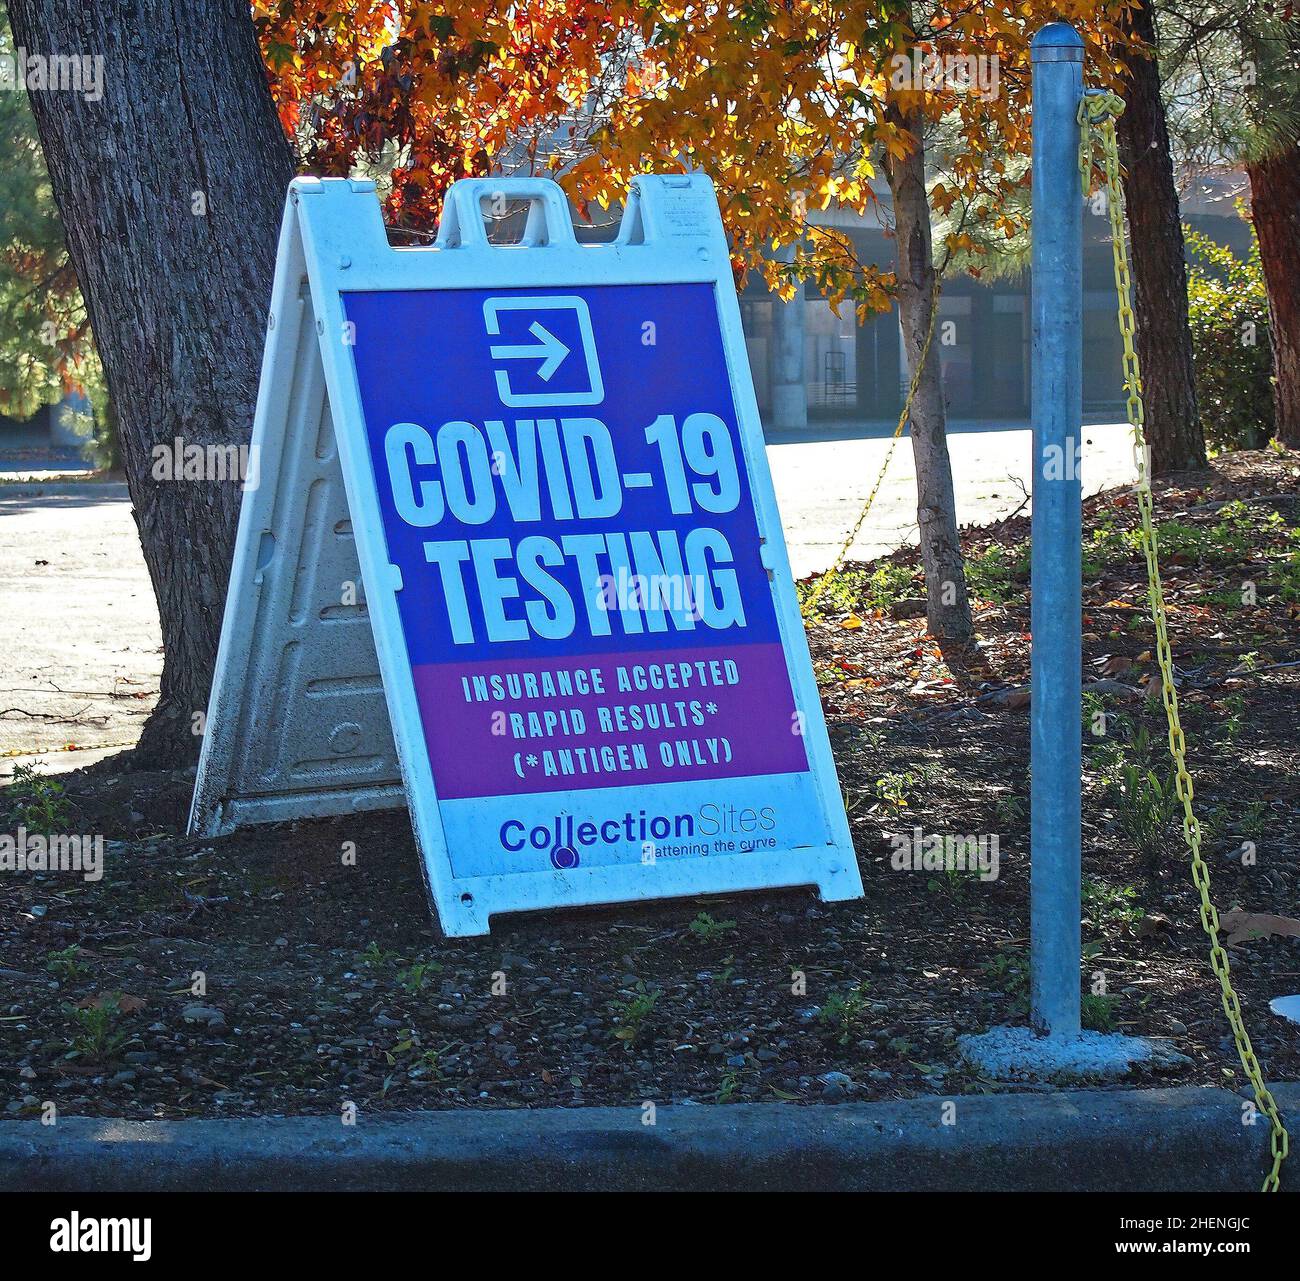 sign for covid-19 testing site in Pleasanton, California Stock Photo